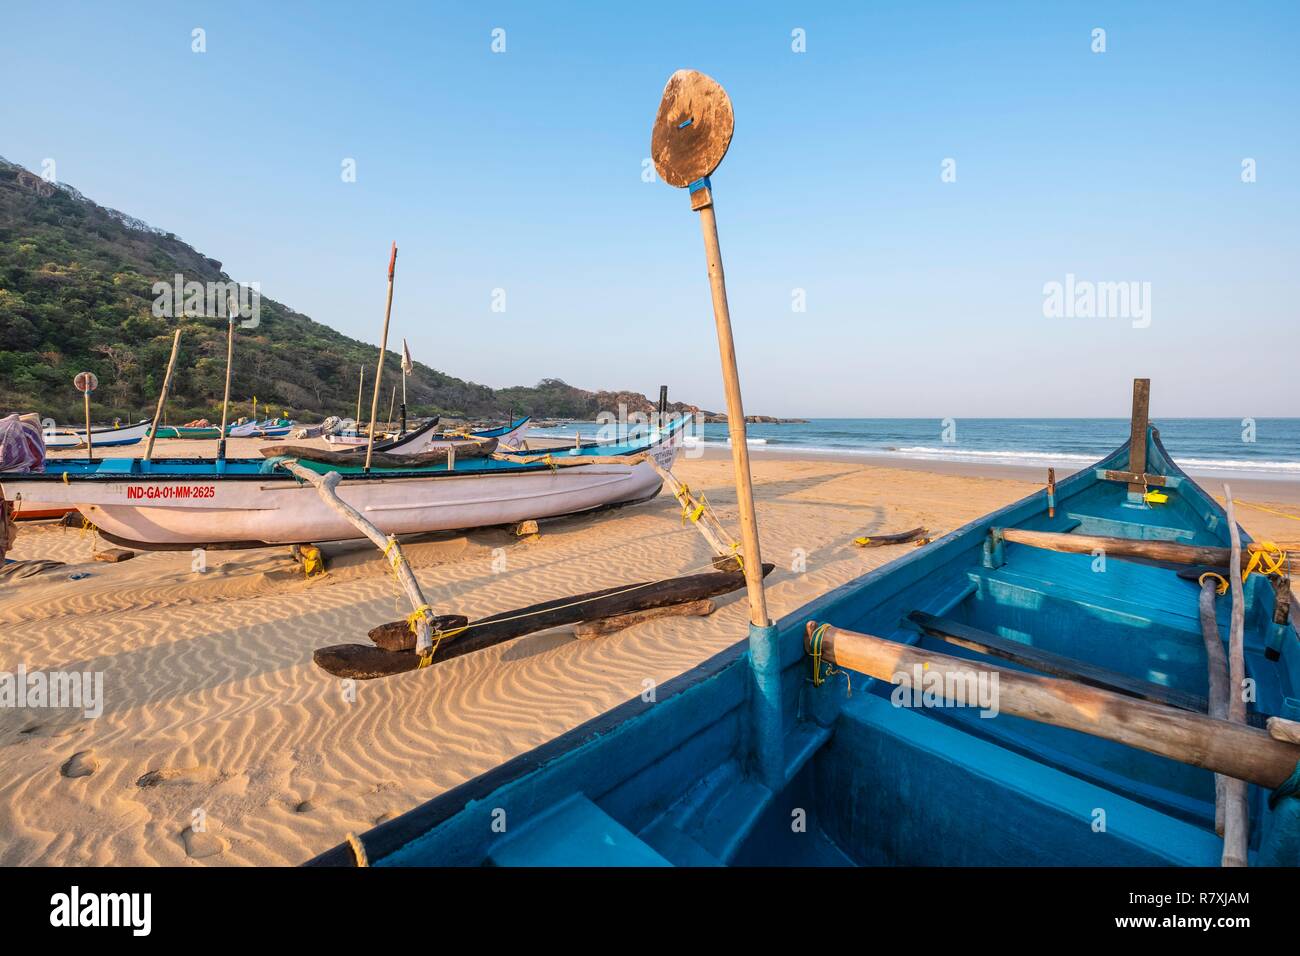 L'Inde, Goa, plage d'Agonda, bateaux de pêche traditionnels Banque D'Images